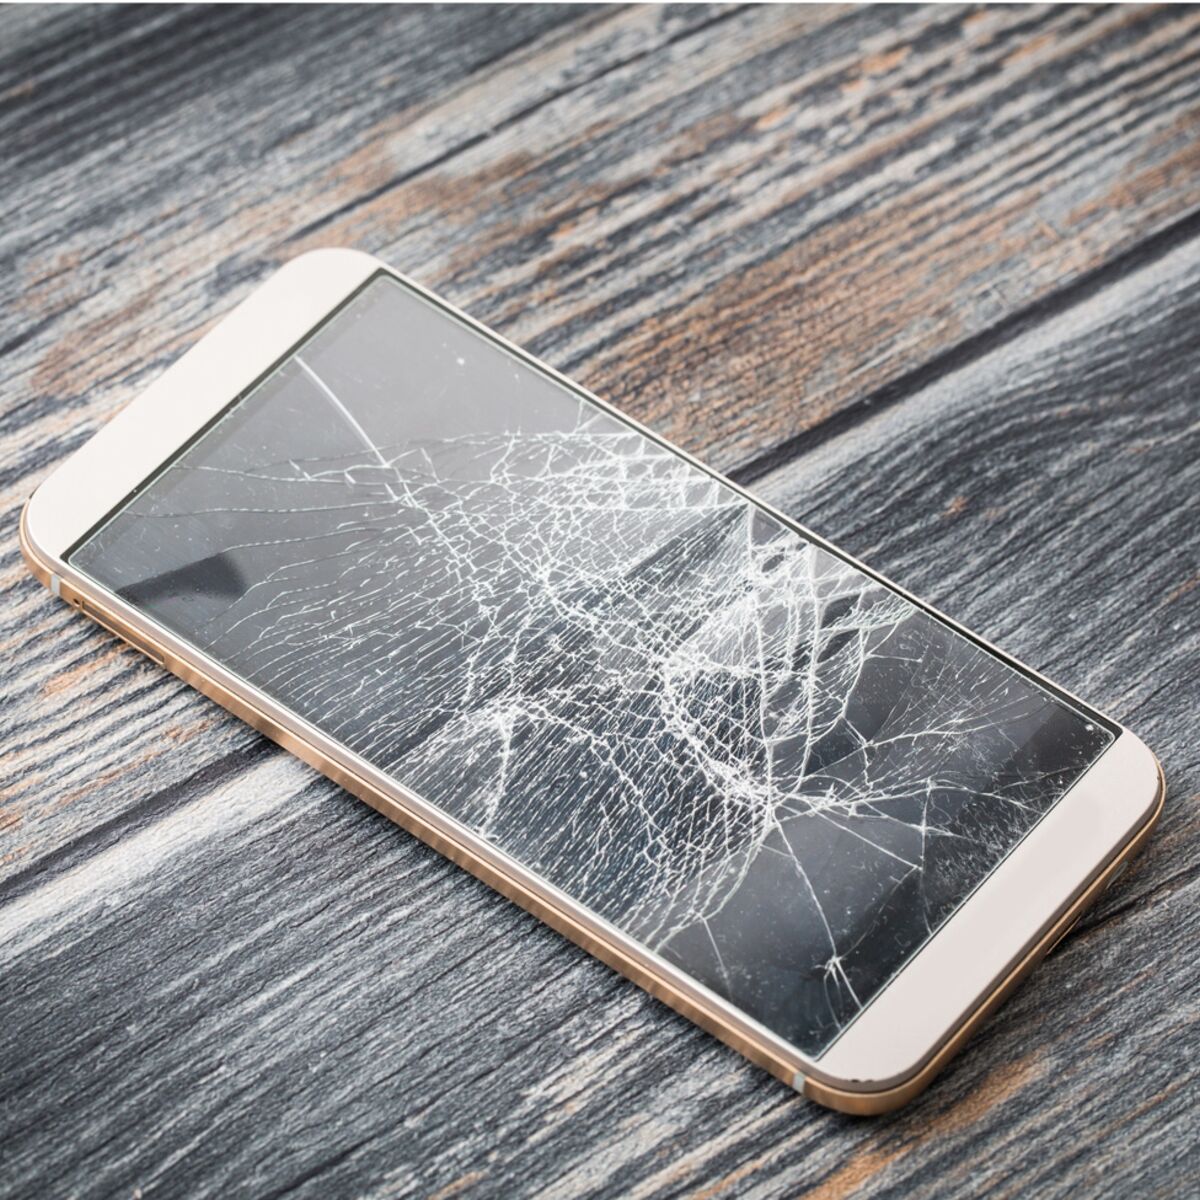 Écran de téléphone cassé : conseils et astuces pour le réparer